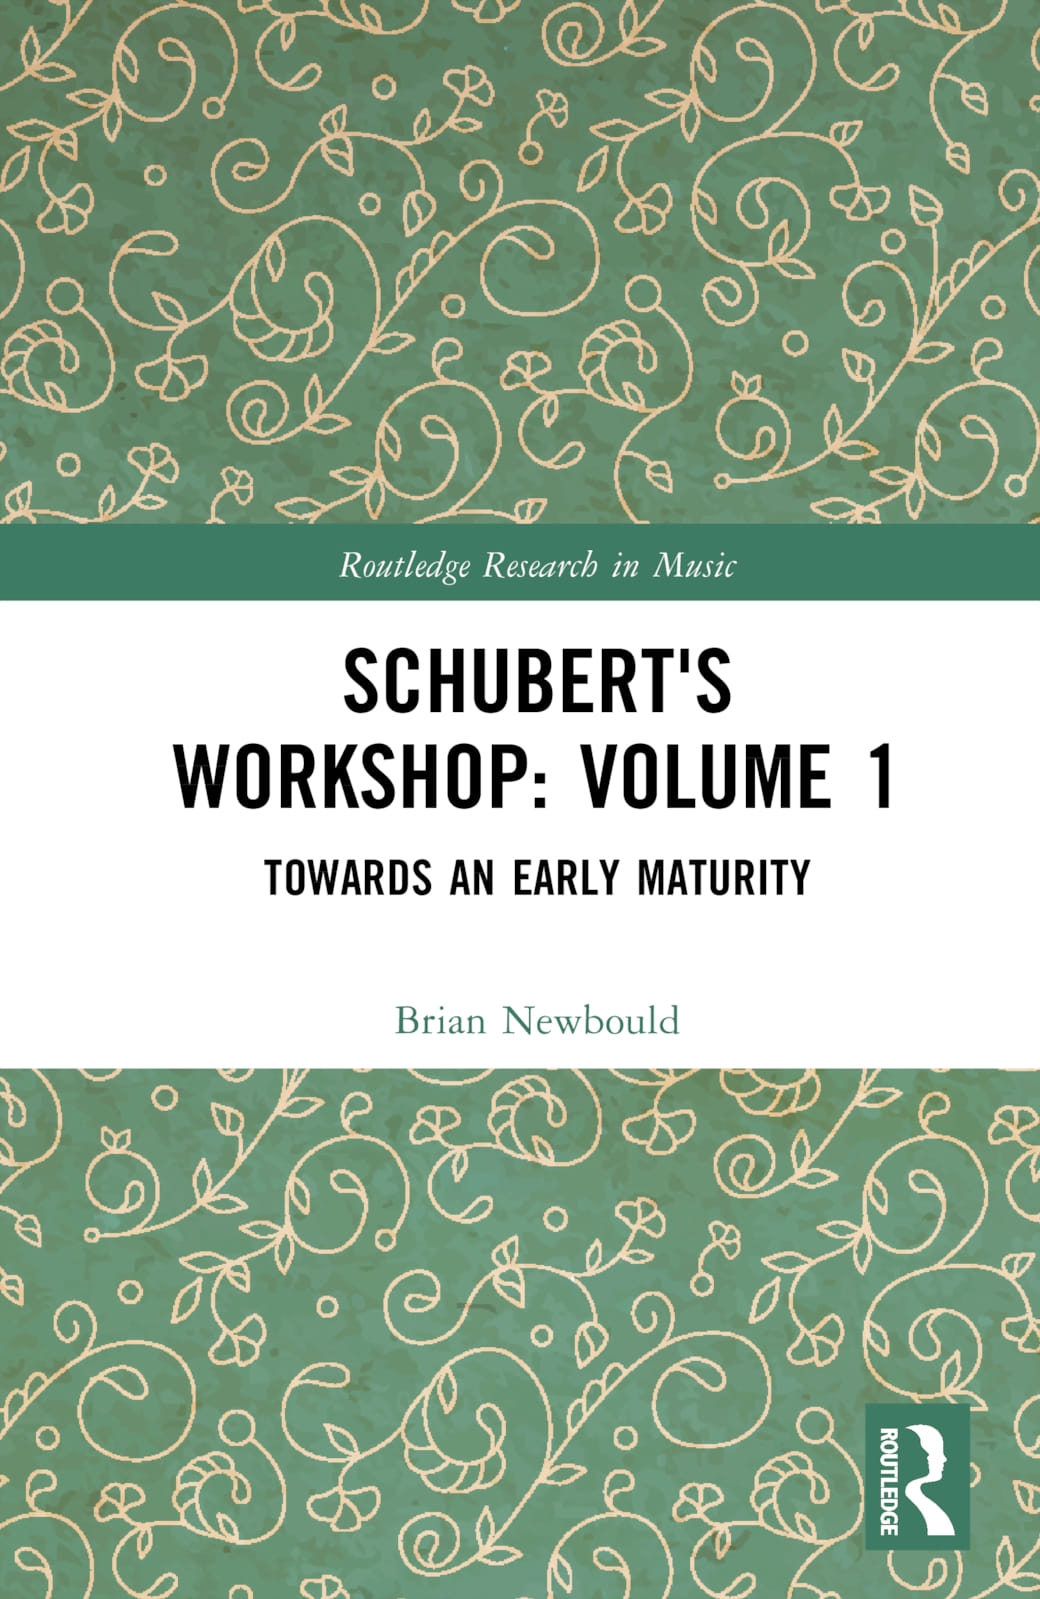 Schubert’s Workshop: Volume 1: Towards an Early Maturity